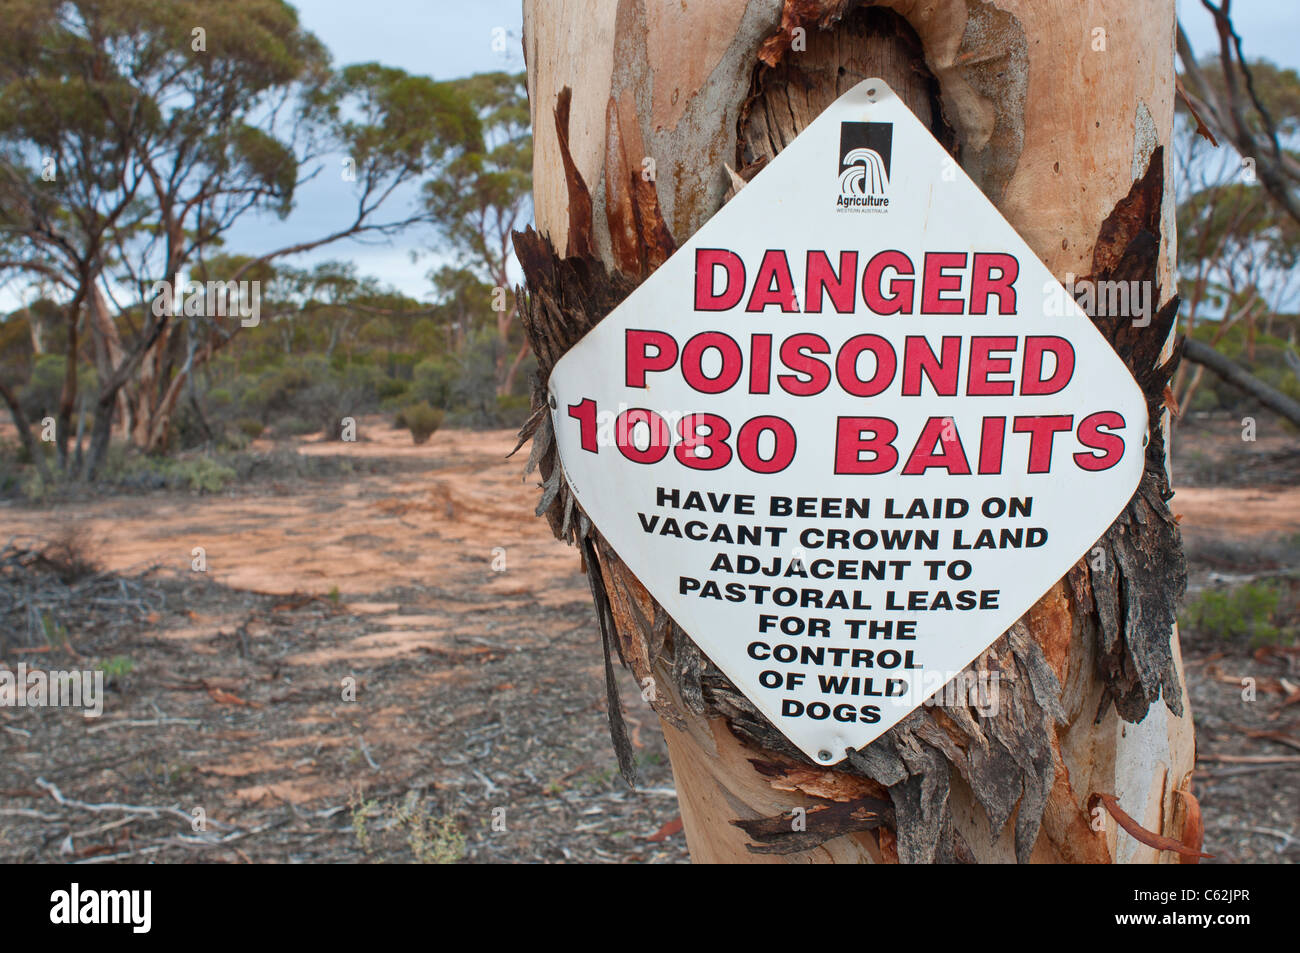 Avis d'avertissement de la pose d'appâts empoisonnés 1080 pour le contrôle de dingos en Australie de l'Ouest Banque D'Images